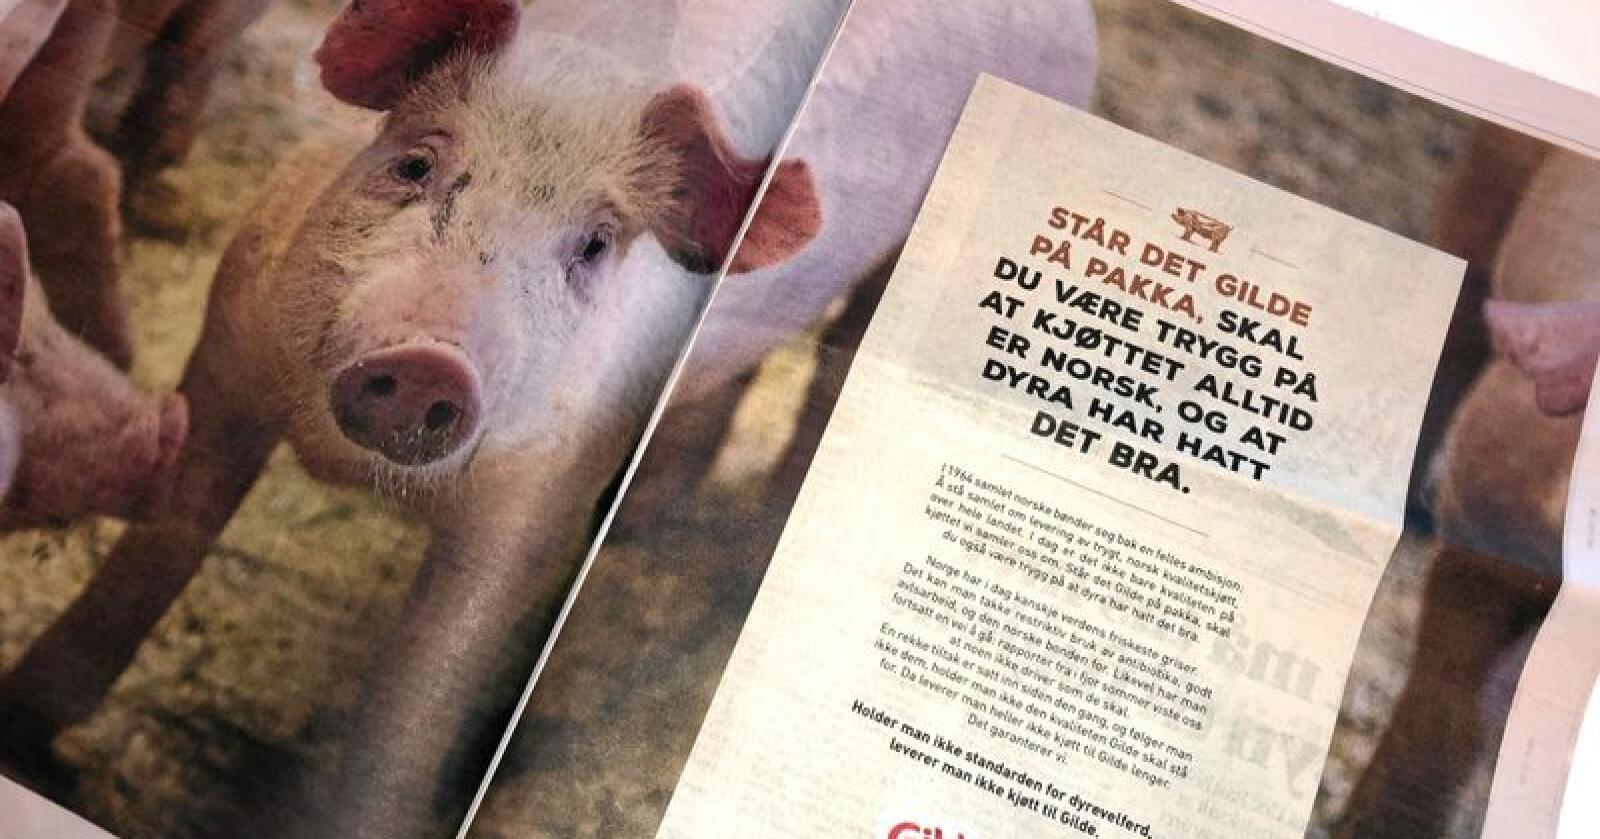 En dokumentar om svineprodusenter som ble sendt på NRK onsdag, har skapt reaksjoner. Torsdag slo Gilde tilbake i en annonse i flere norske aviser. Foto: Lars Bilit Hagen